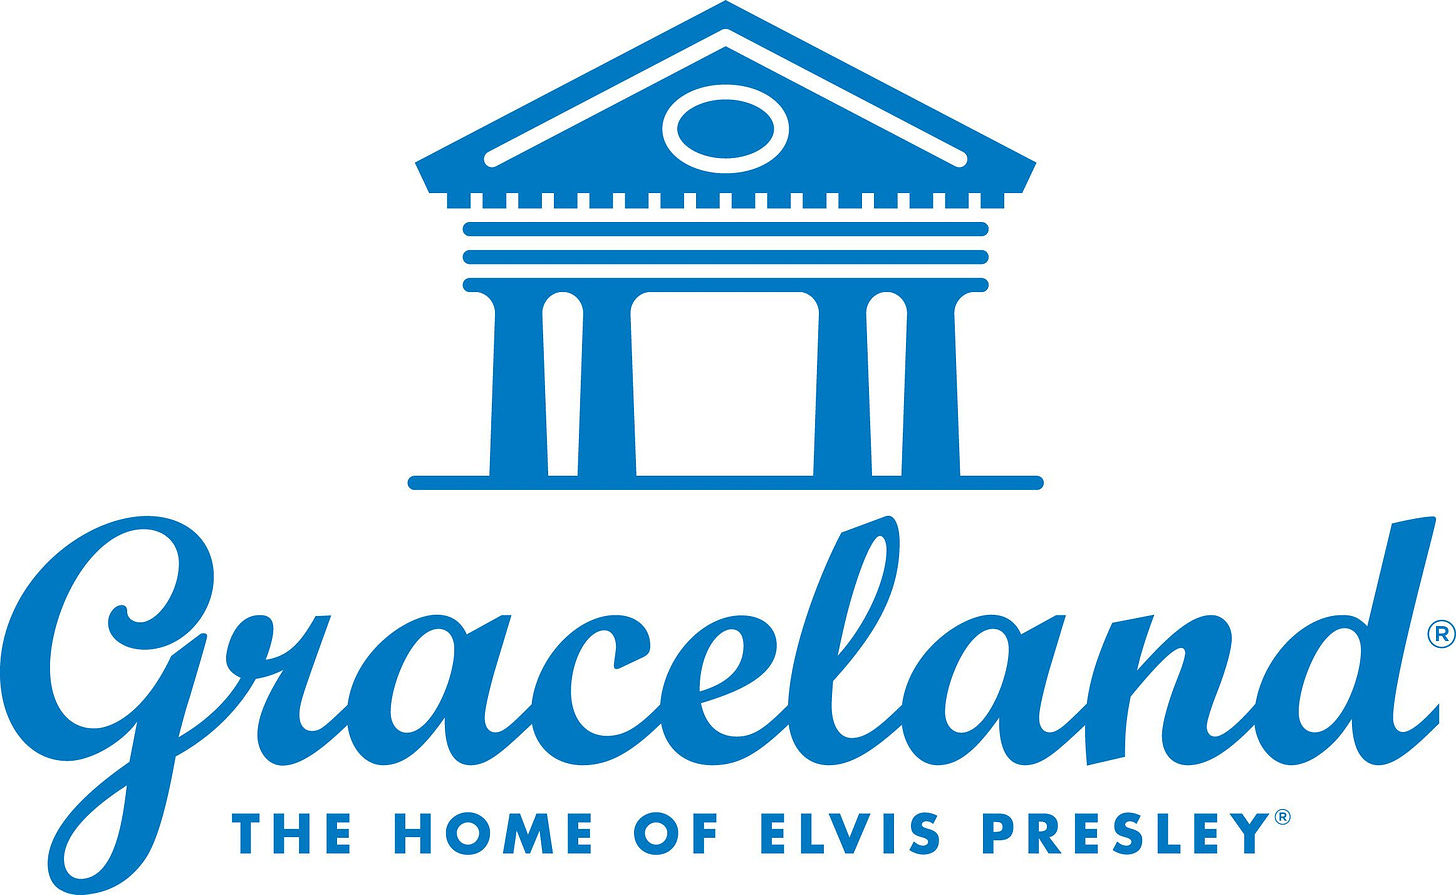 Graceland logo | Graceland, Elvis presley, Elvis